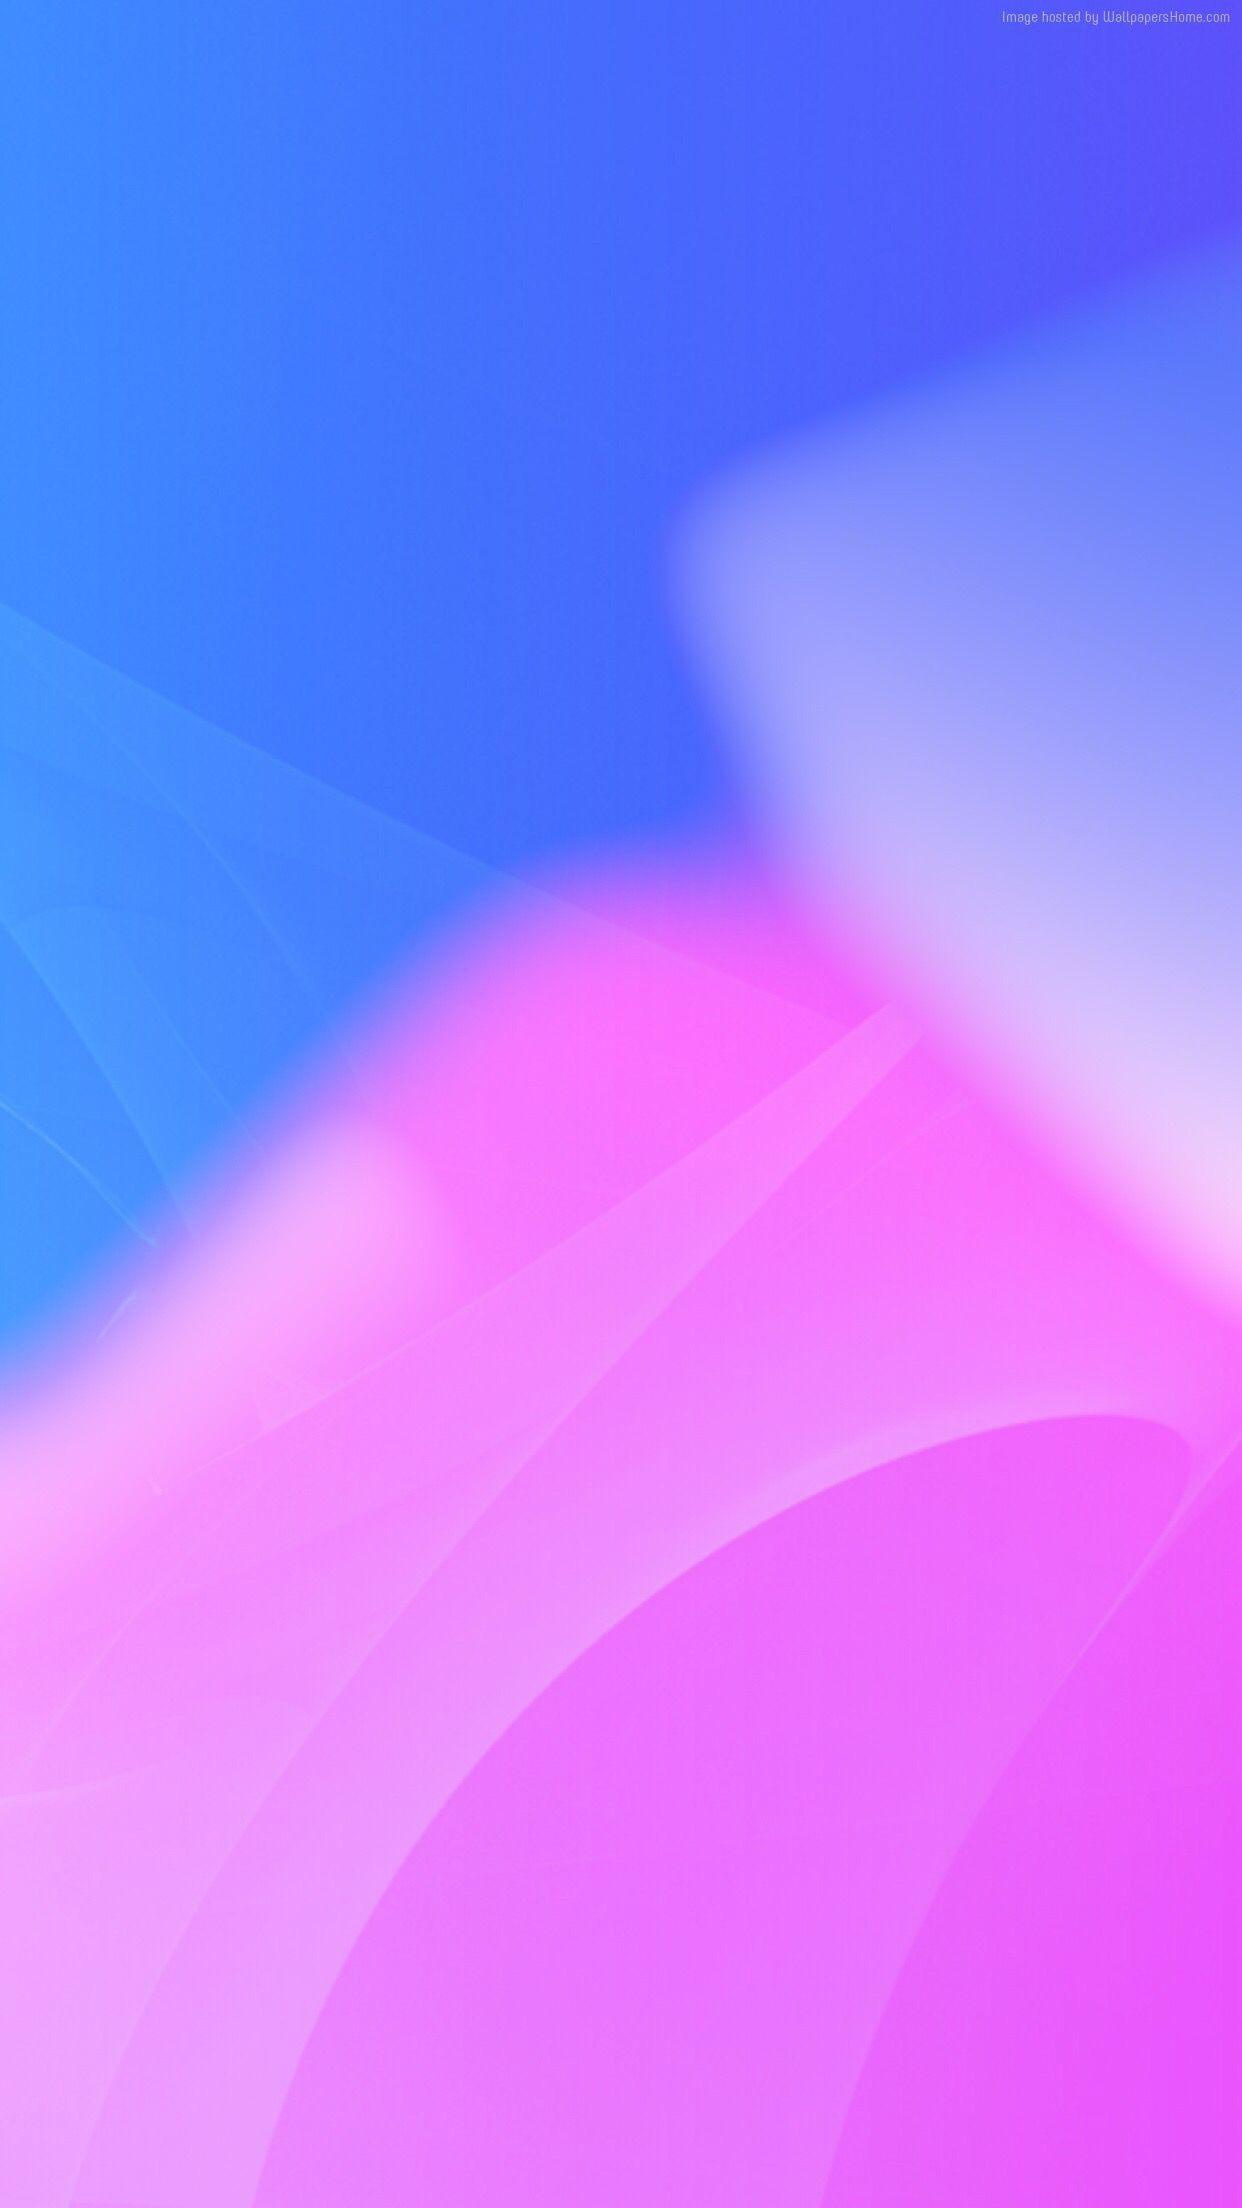 1242x2208 iOS 11, màu hồng, xanh lam, trừu tượng, táo, hình nền, iPhone x, iPhone 8